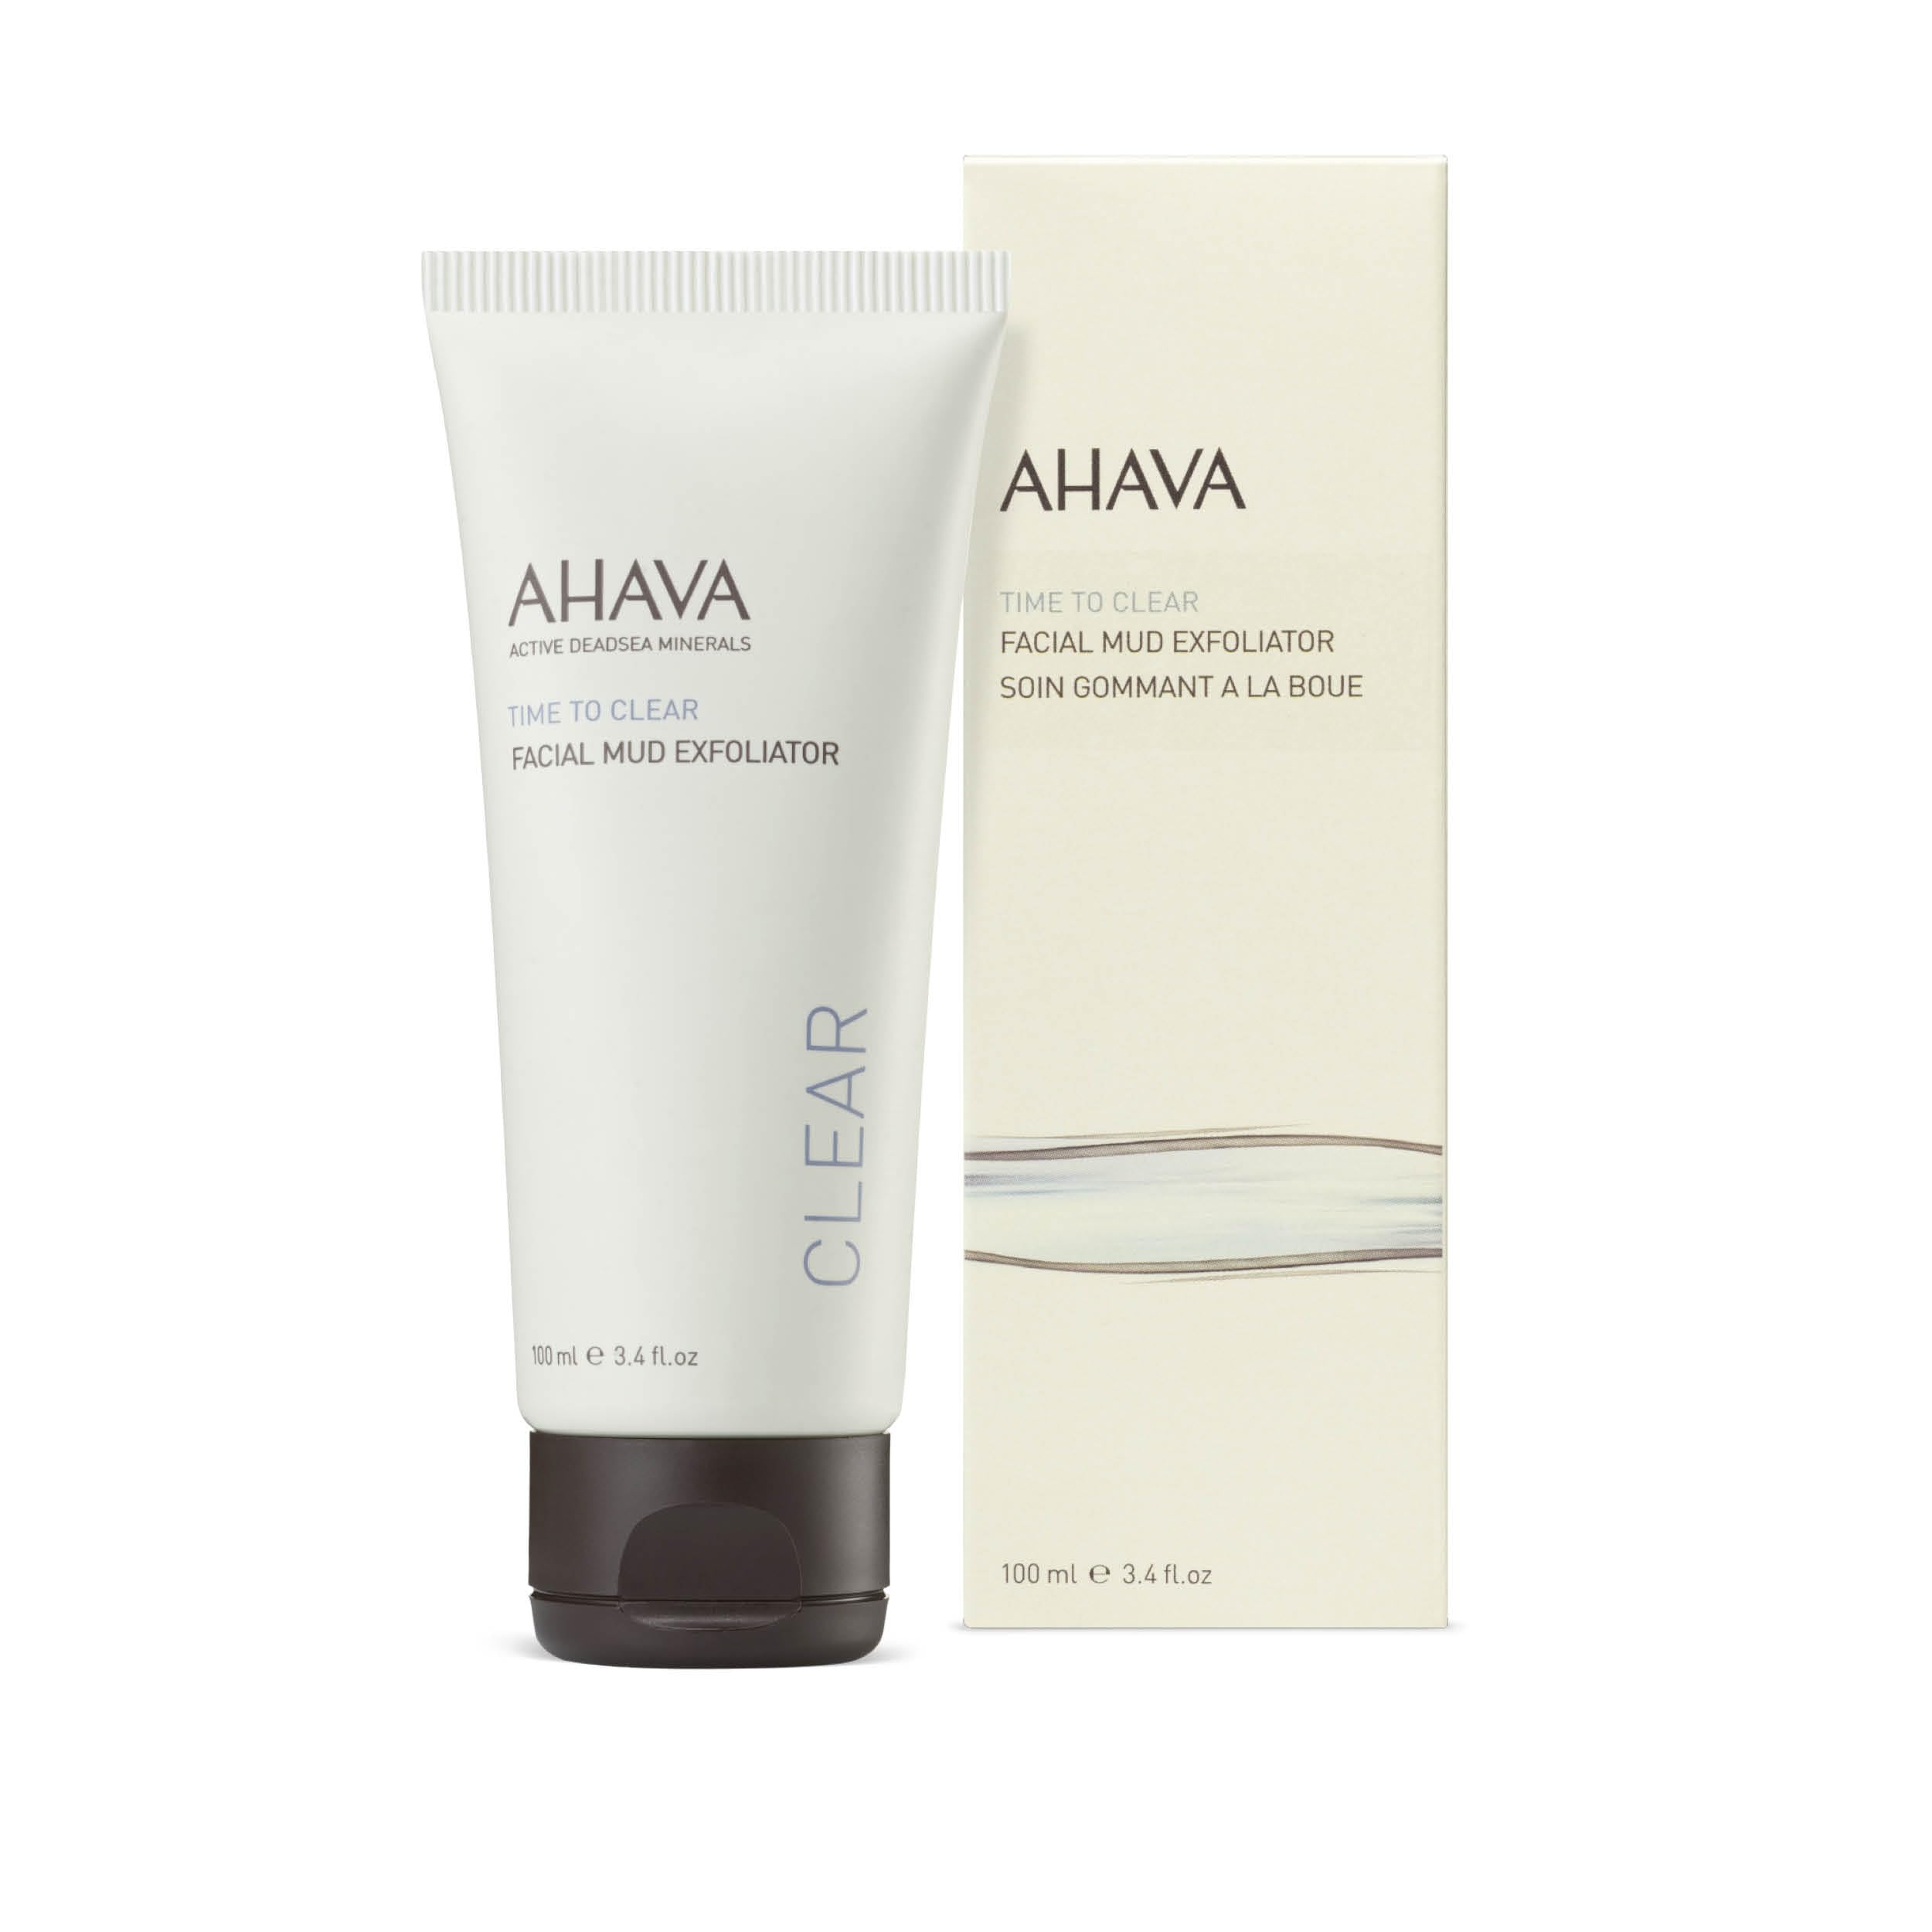 AHAVA Facial Mud Exfoliator, 100 ml